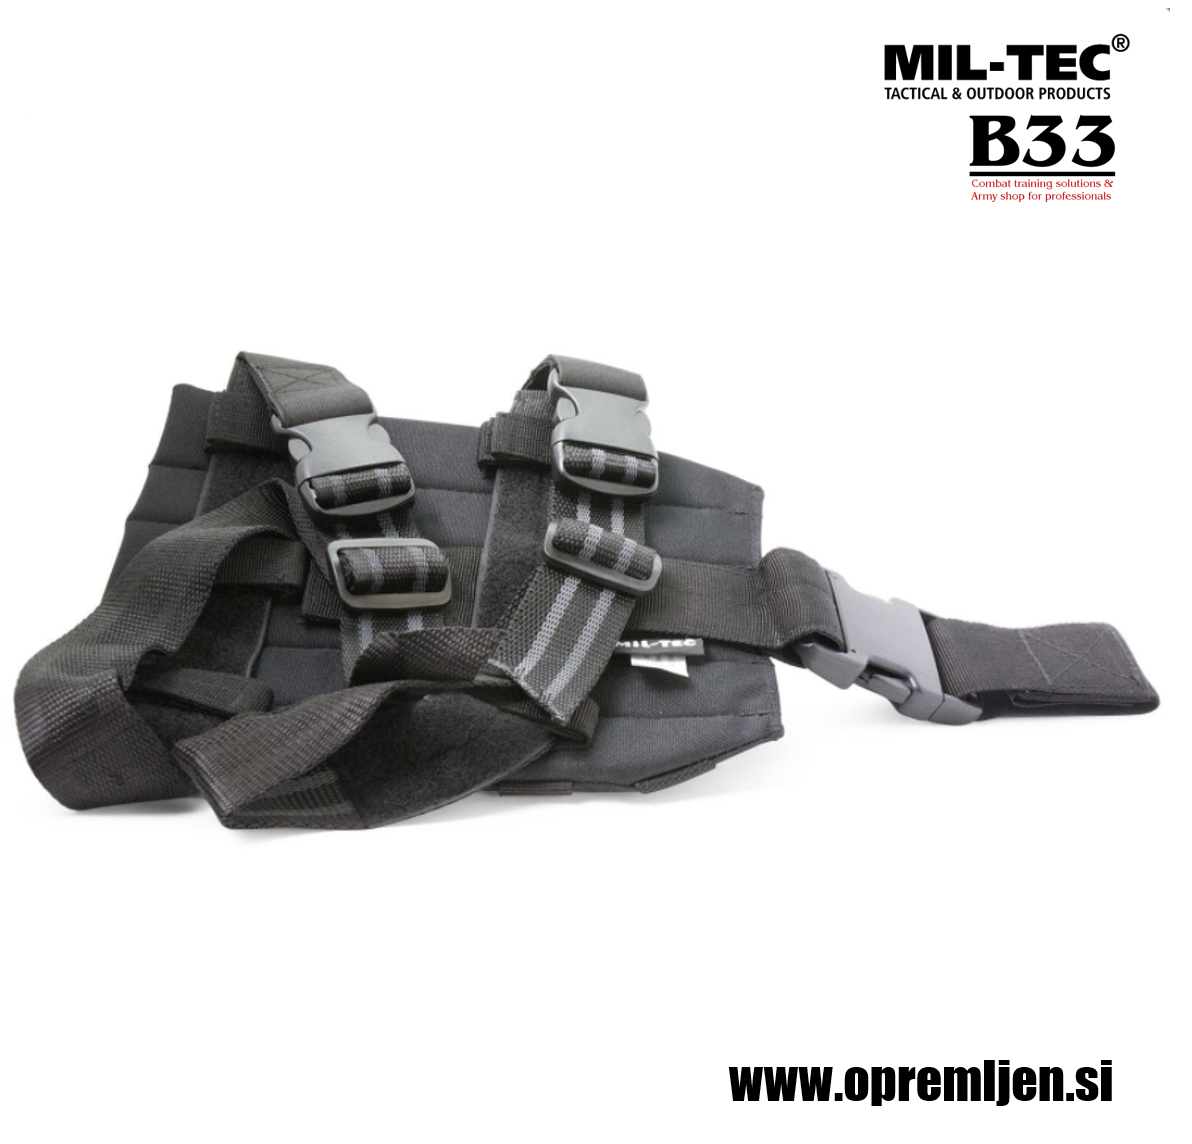 MOLLE nožna platforma za taktične torbice in drugo opremo črne barve MILTEC by B33 army shop at www.opremljen.si